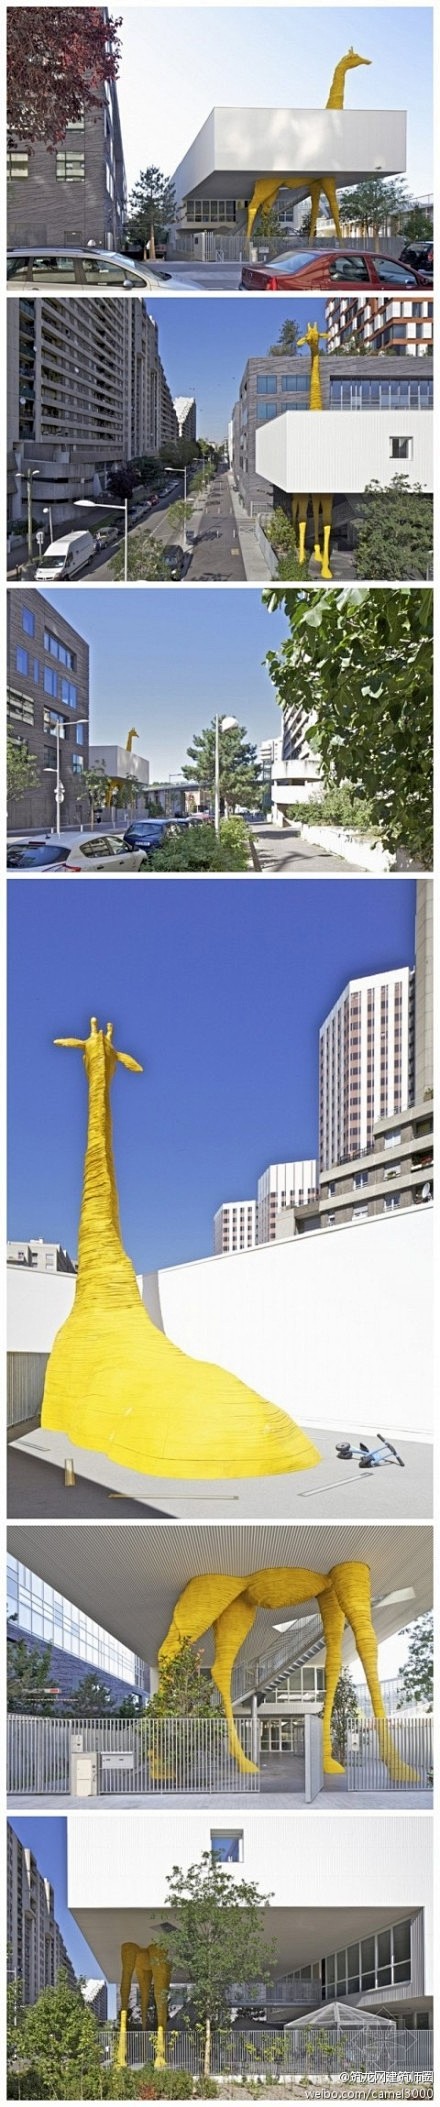 法国巴黎长颈鹿儿童看护中心。一个巨大的黄...